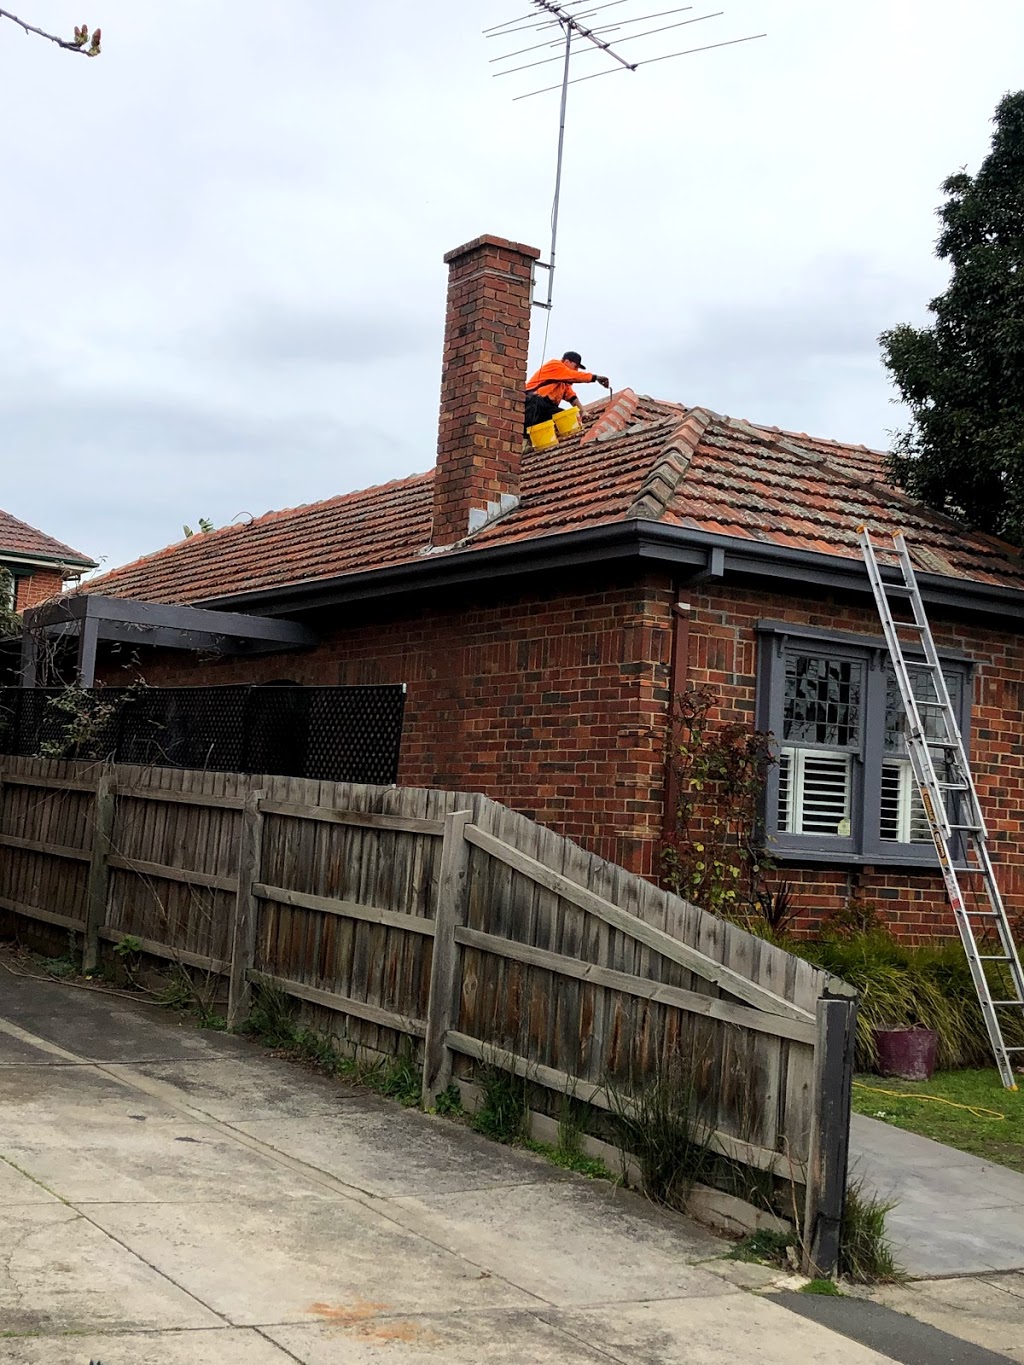 All Seasons Roofing, Roof Repairs, Leaking Roof Repairs Melbourn | 737 Burwood Road, Hawthorn, Hawthorn East VIC 3122, Australia | Phone: (03) 8862 5420